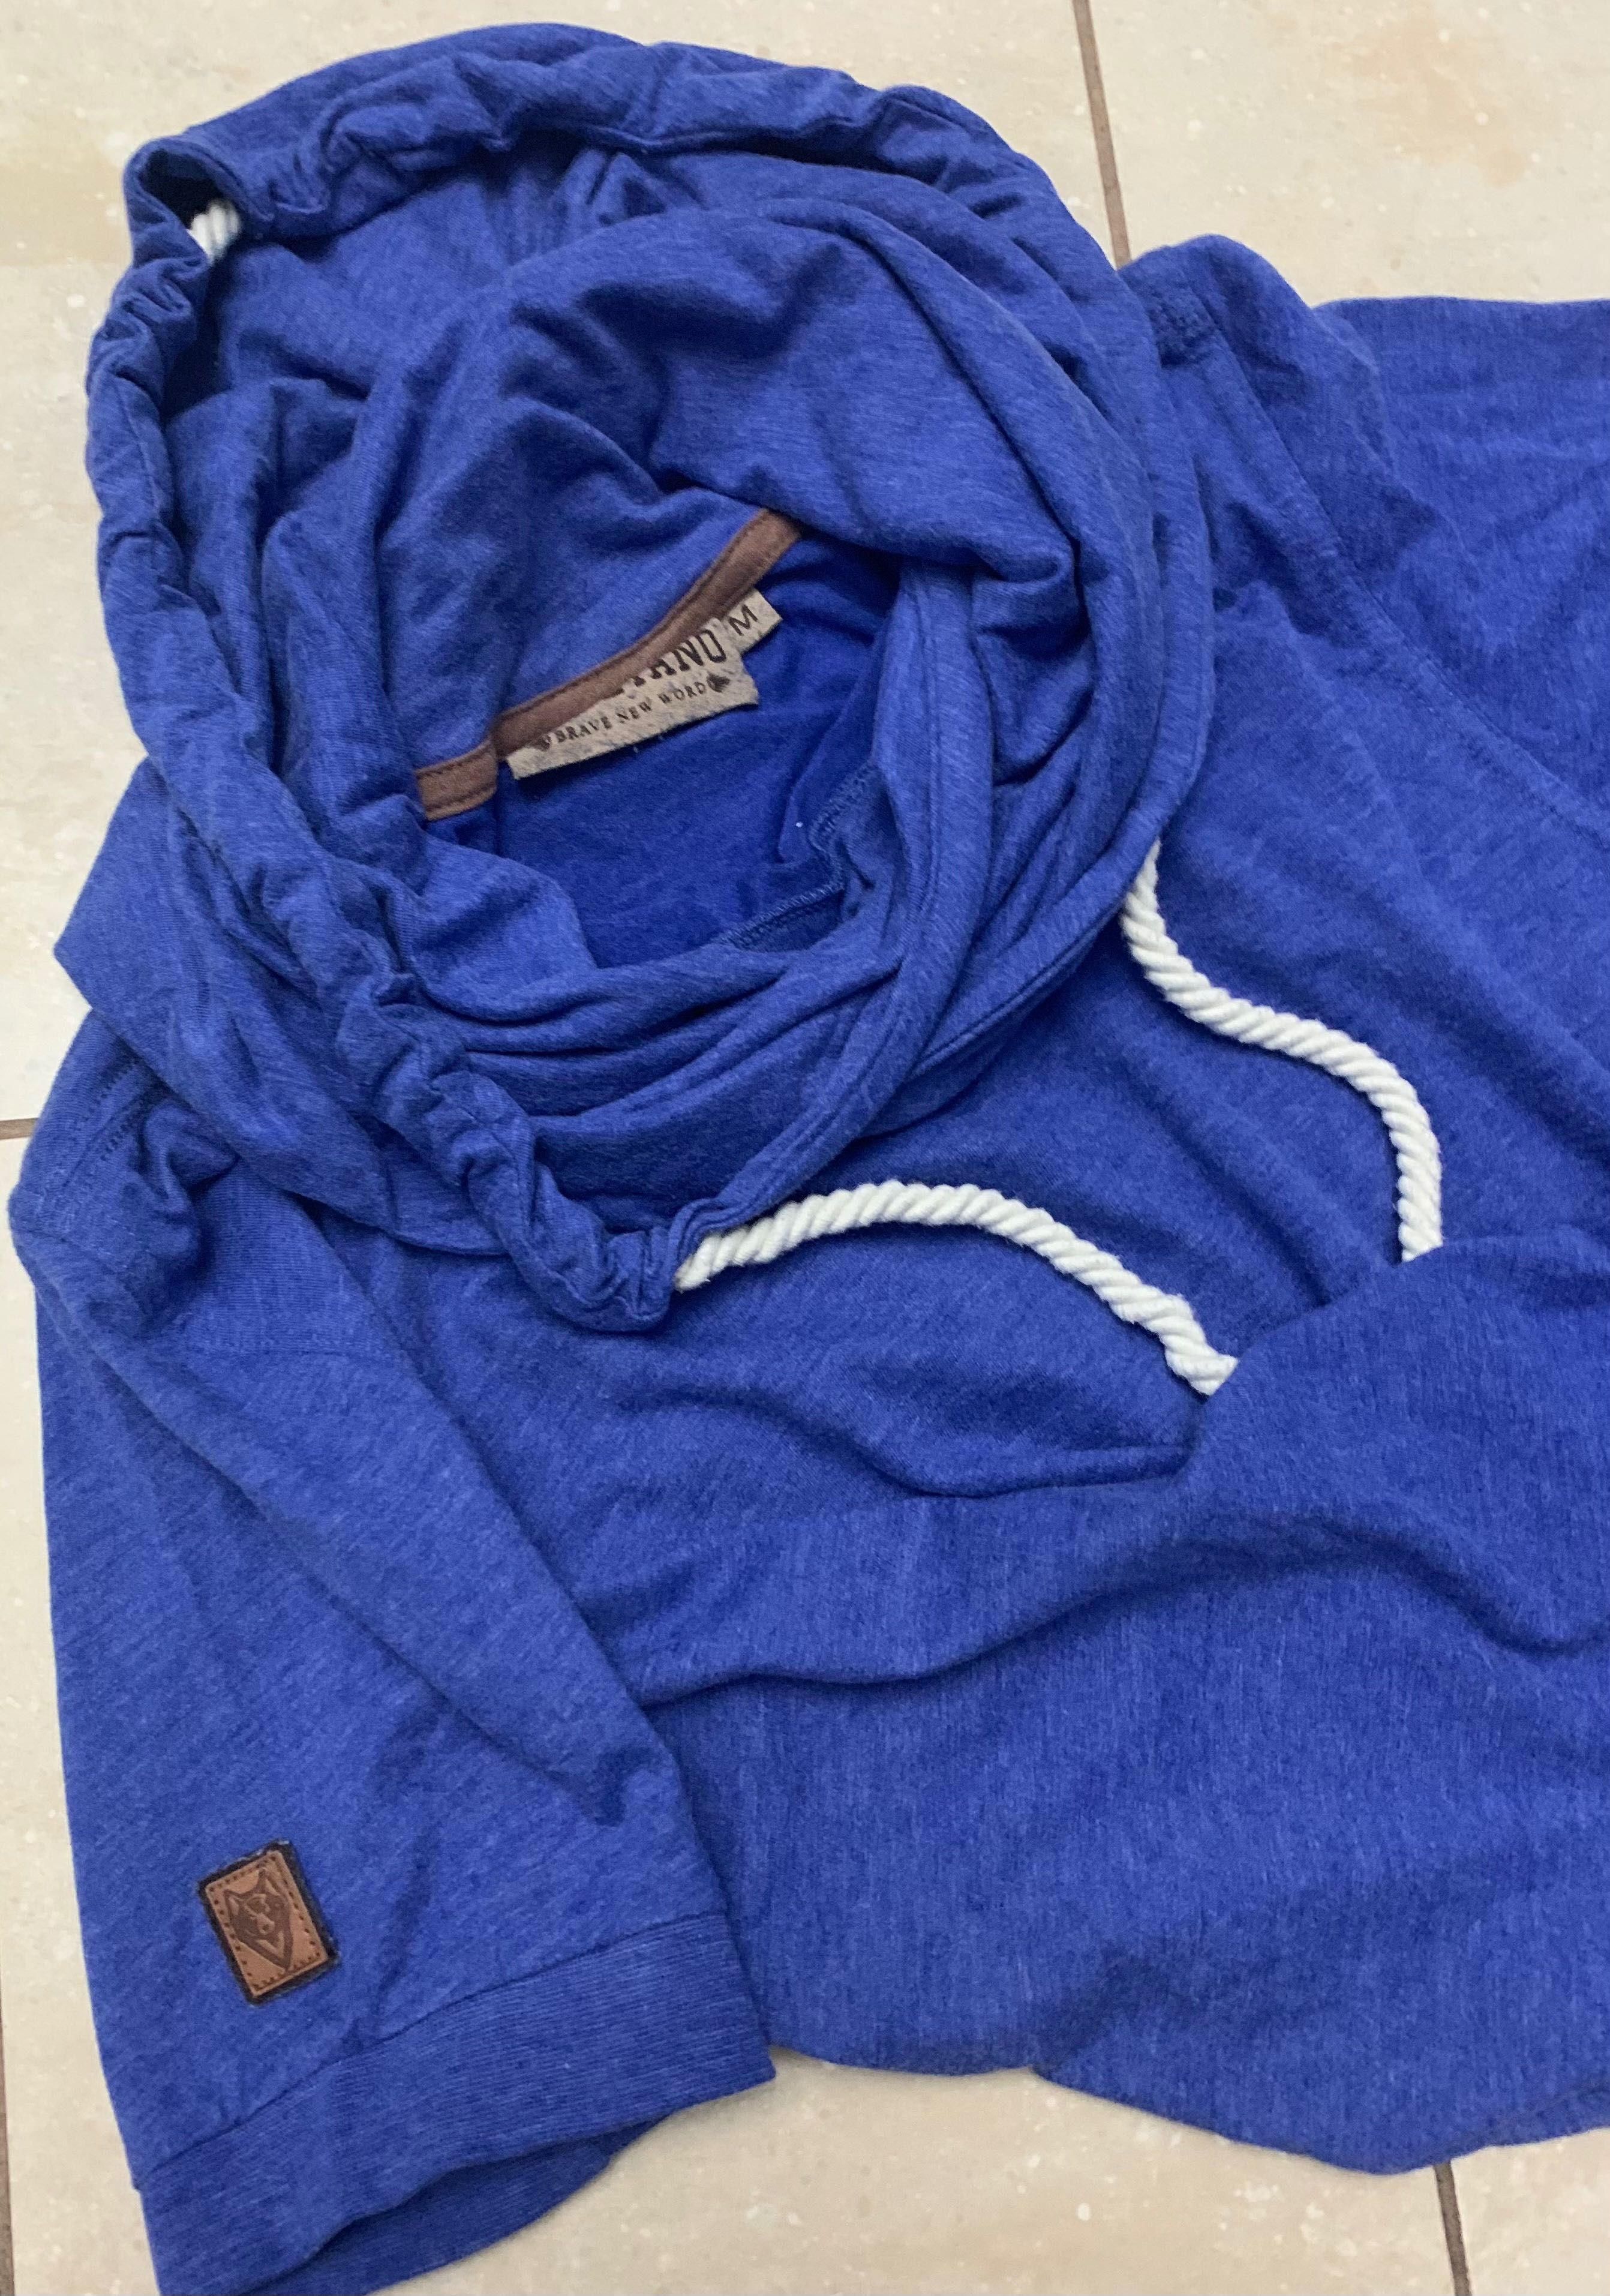 Naketano niebieska, markowa koszulka T-Shirt z kapturem r. M bawełna